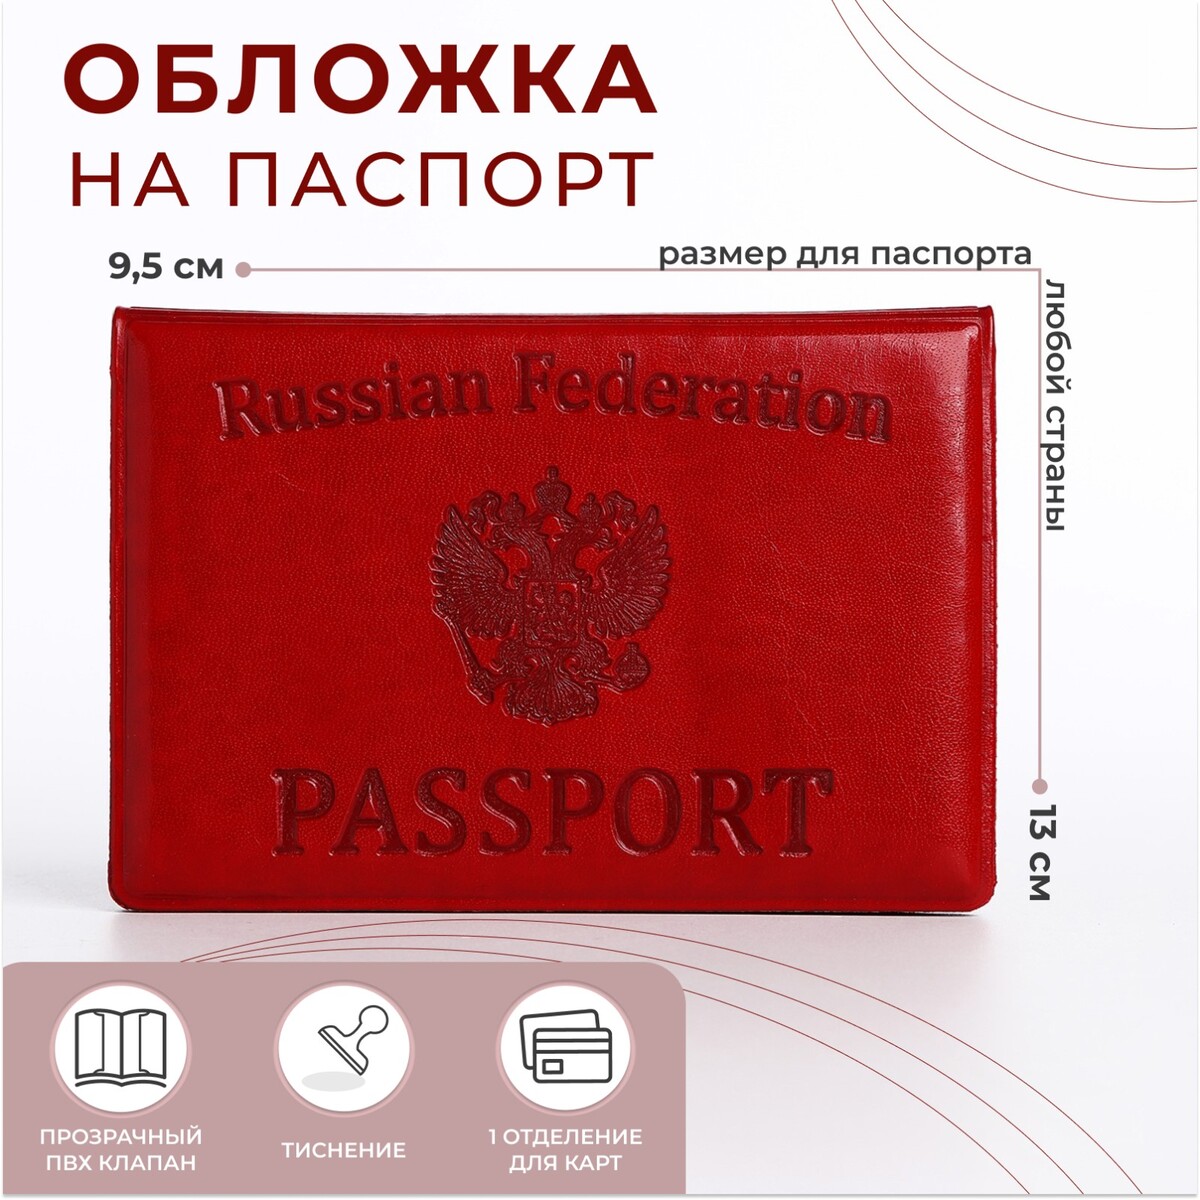 Обложка для паспорта, цвет алый алый